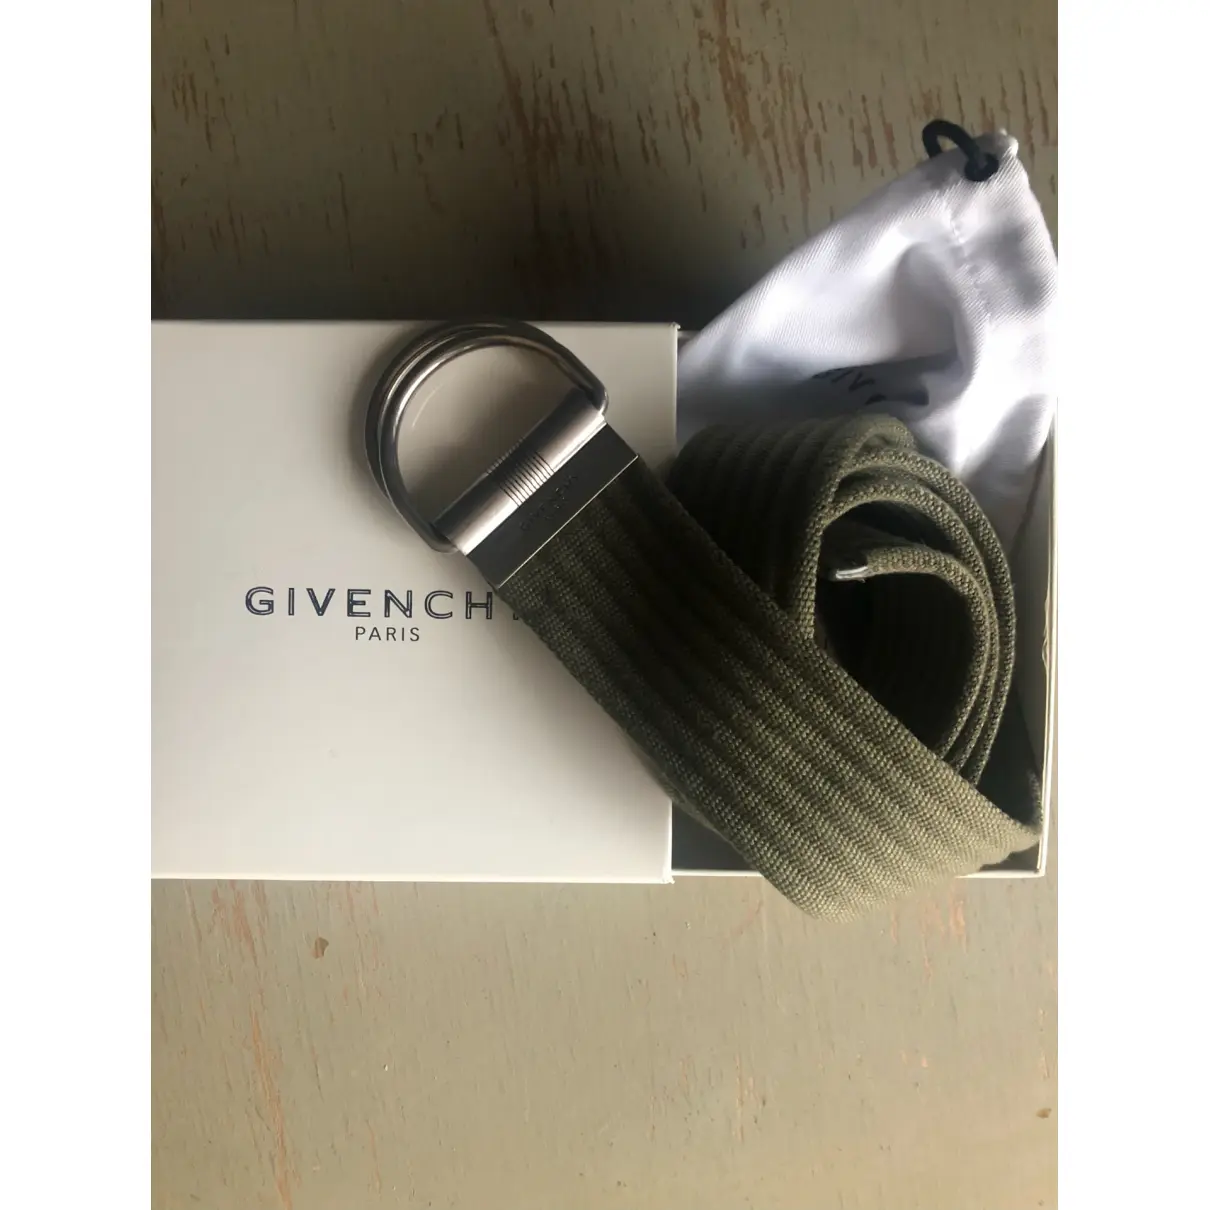 Buy Givenchy Belt online